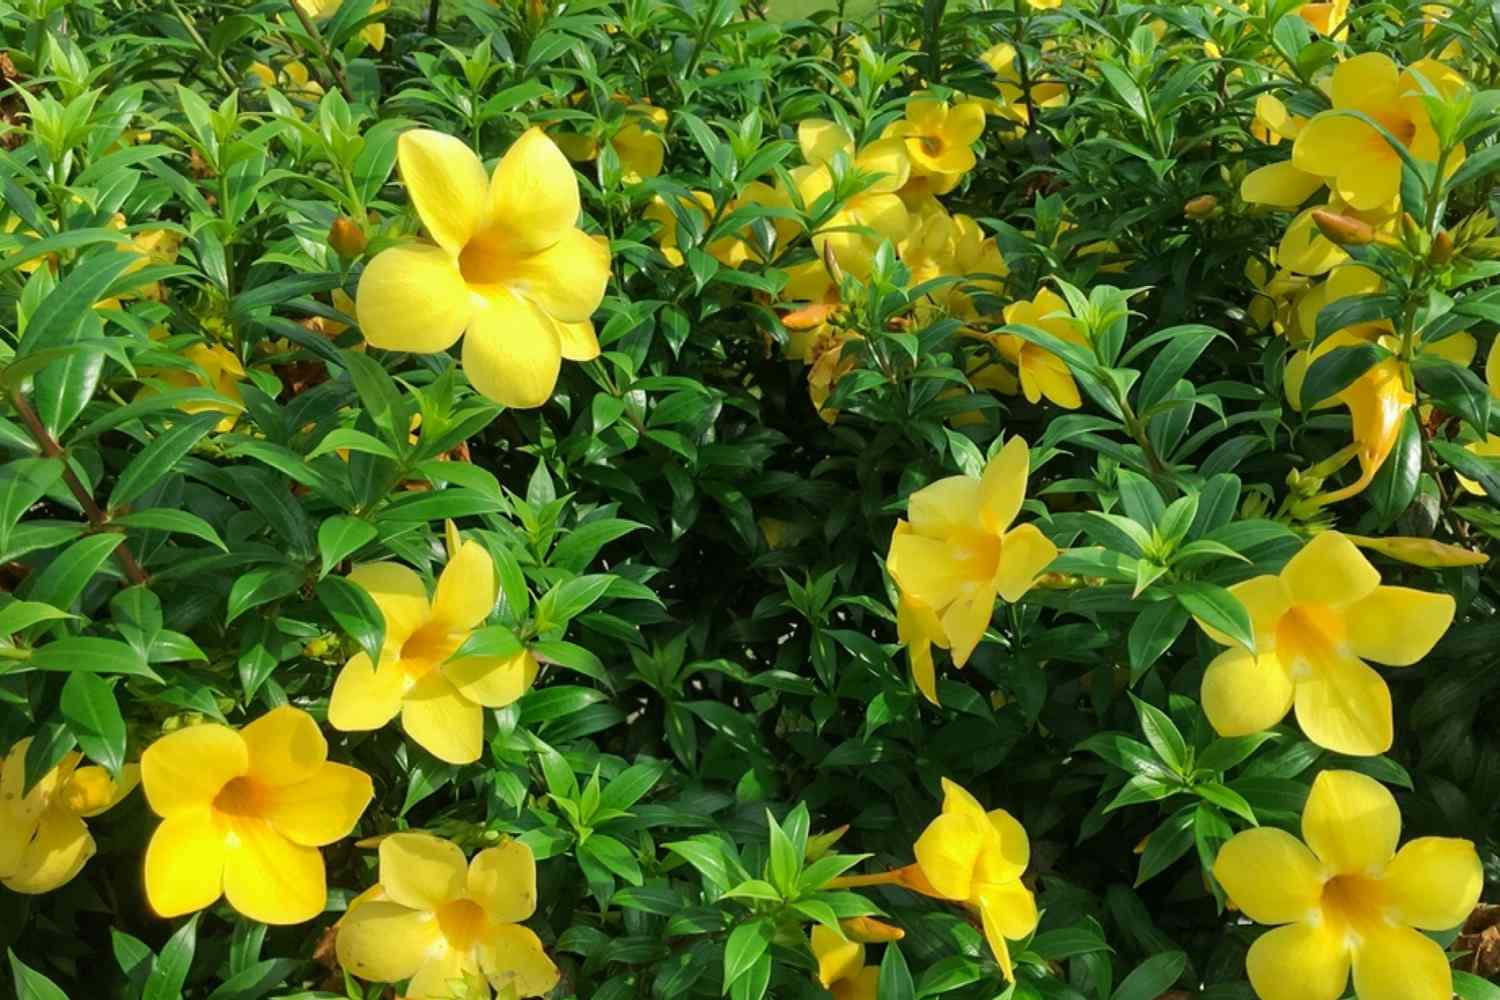 Allamanda arbusto trompeta con flores amarillas mantecosas en tallos con hojas brillantes